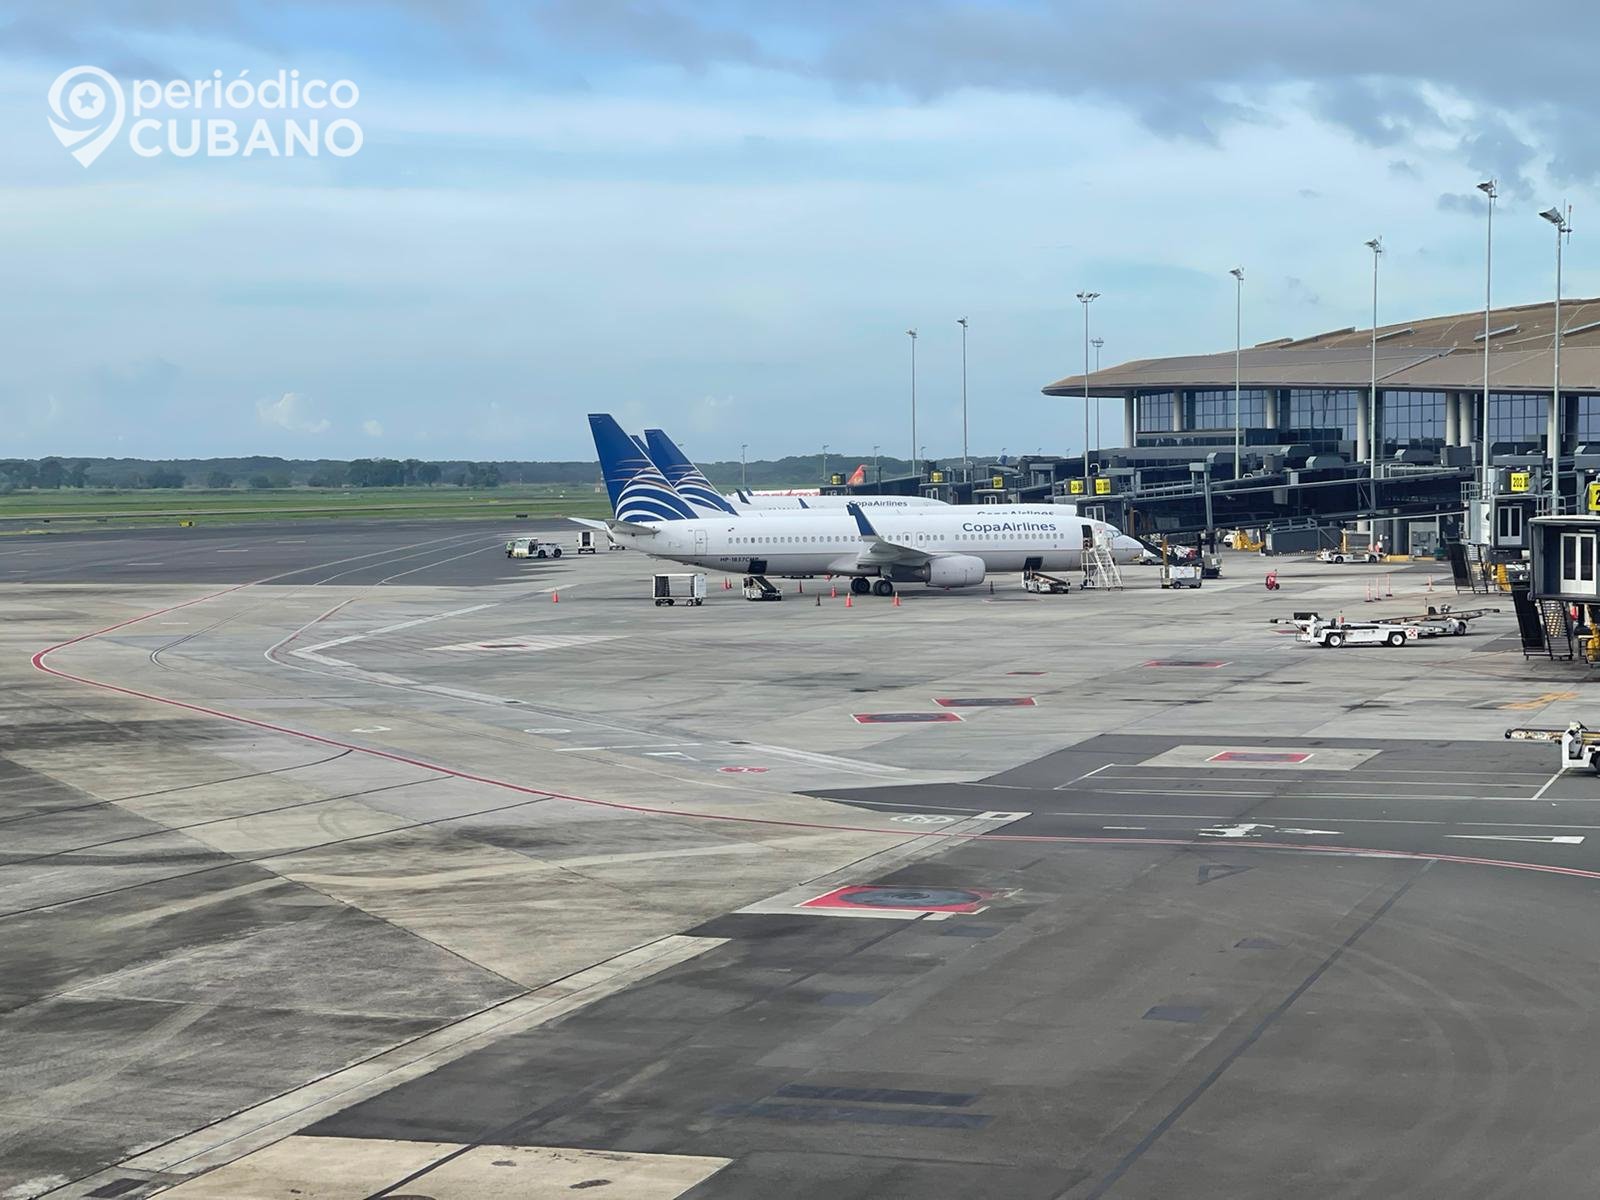 Itinerario oficial de los vuelos a Cuba desde Panamá en Copa Airlines